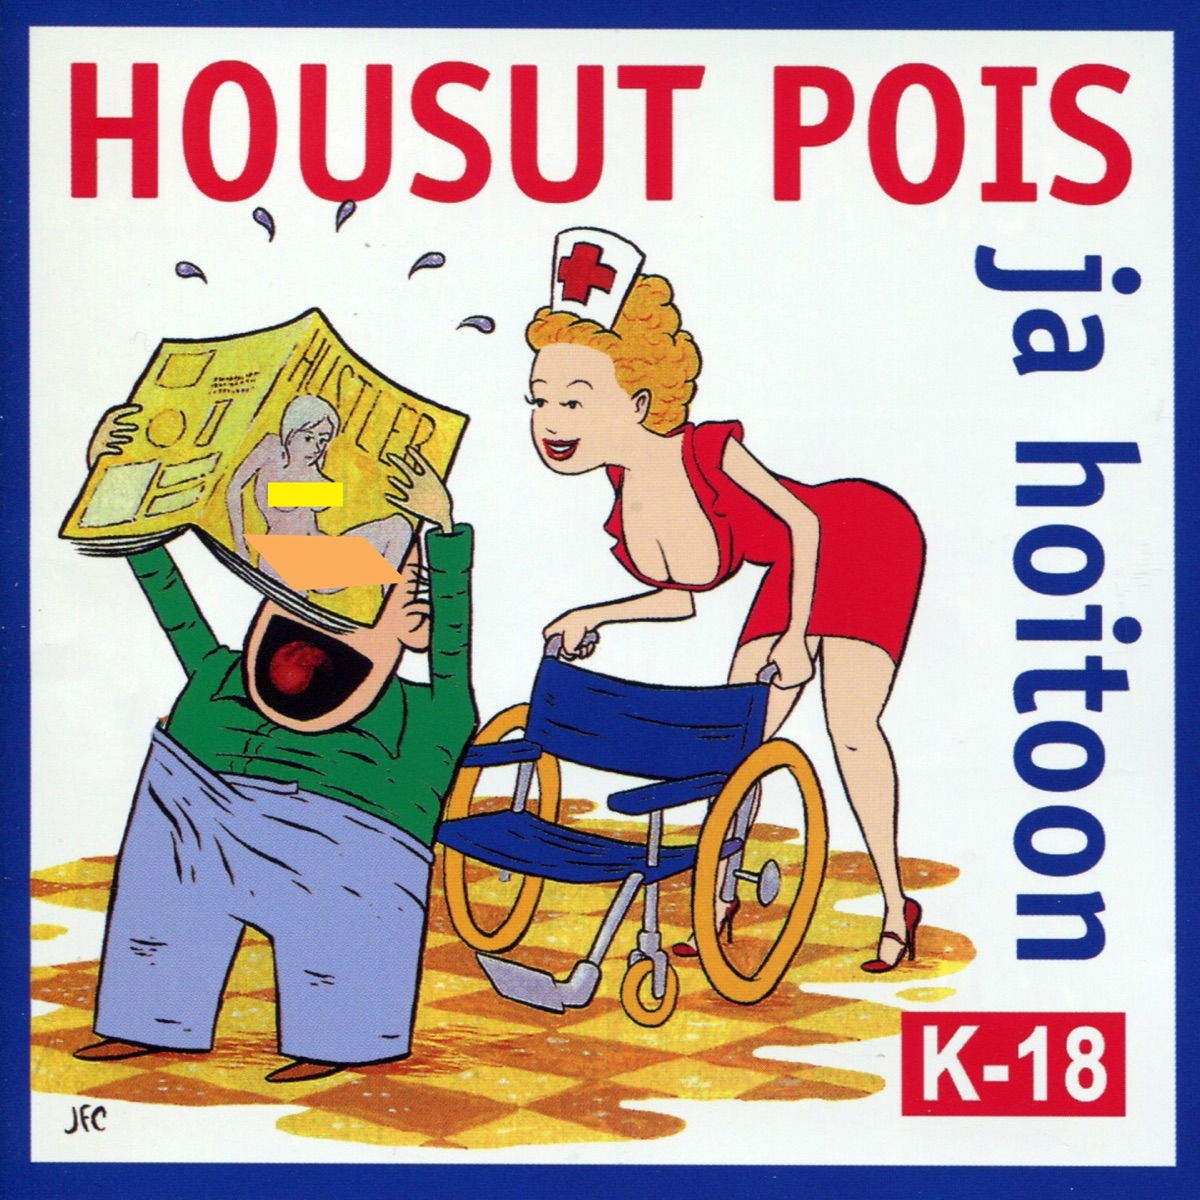 Housut Pois Ja Hoitoon (Isojen Poikien Ja Tyttöjen Lauluja) - Album by  Various Artists - Apple Music